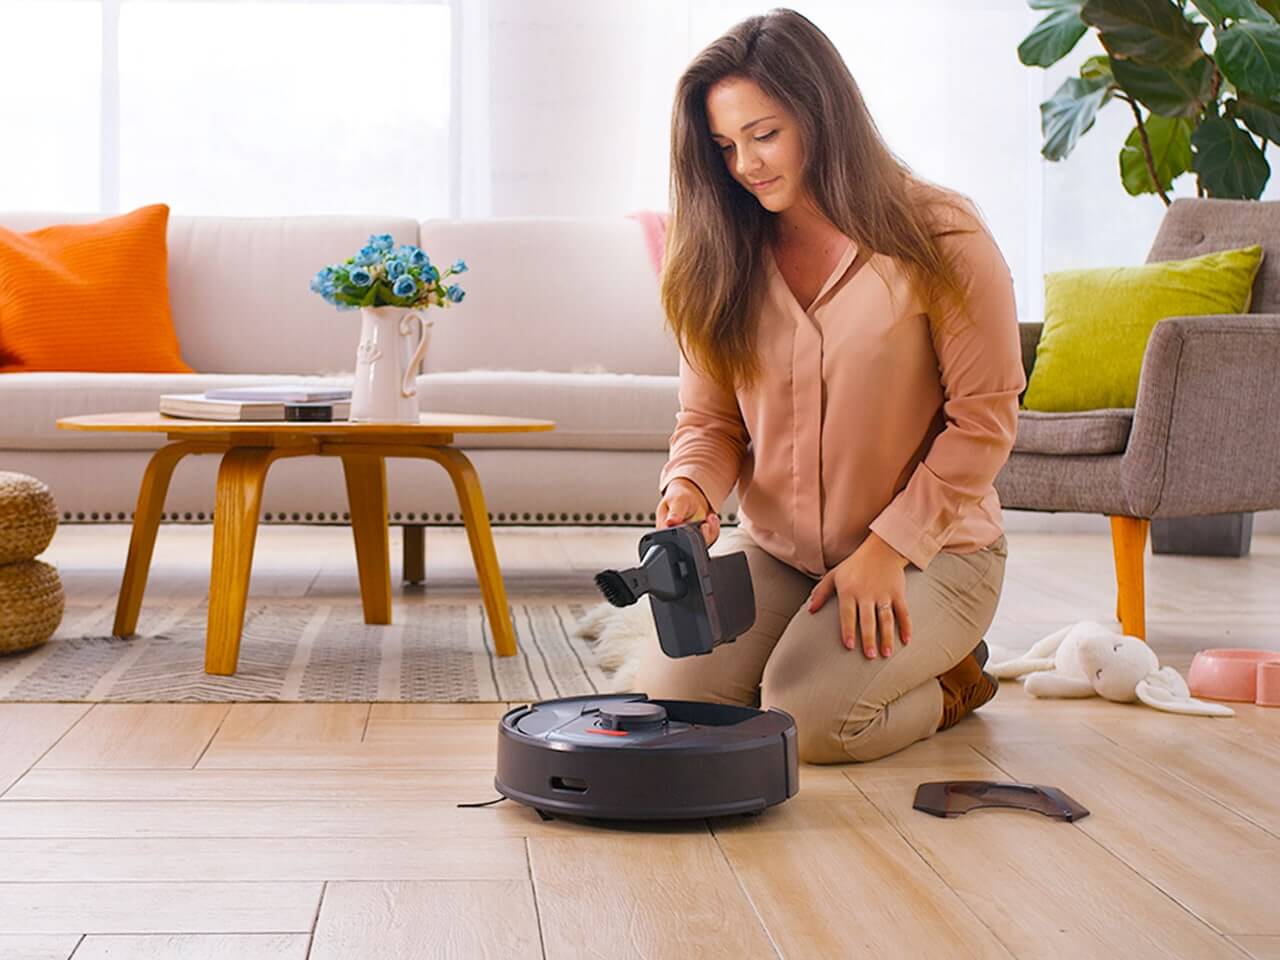 Пылесос enchen vacuum cleaner r1. Робот пылесос Tab Smart Vacuum Cleaner. Робот пылесос Клиан робот. Пылесос в интерьере. Женщина и робот пылесос.